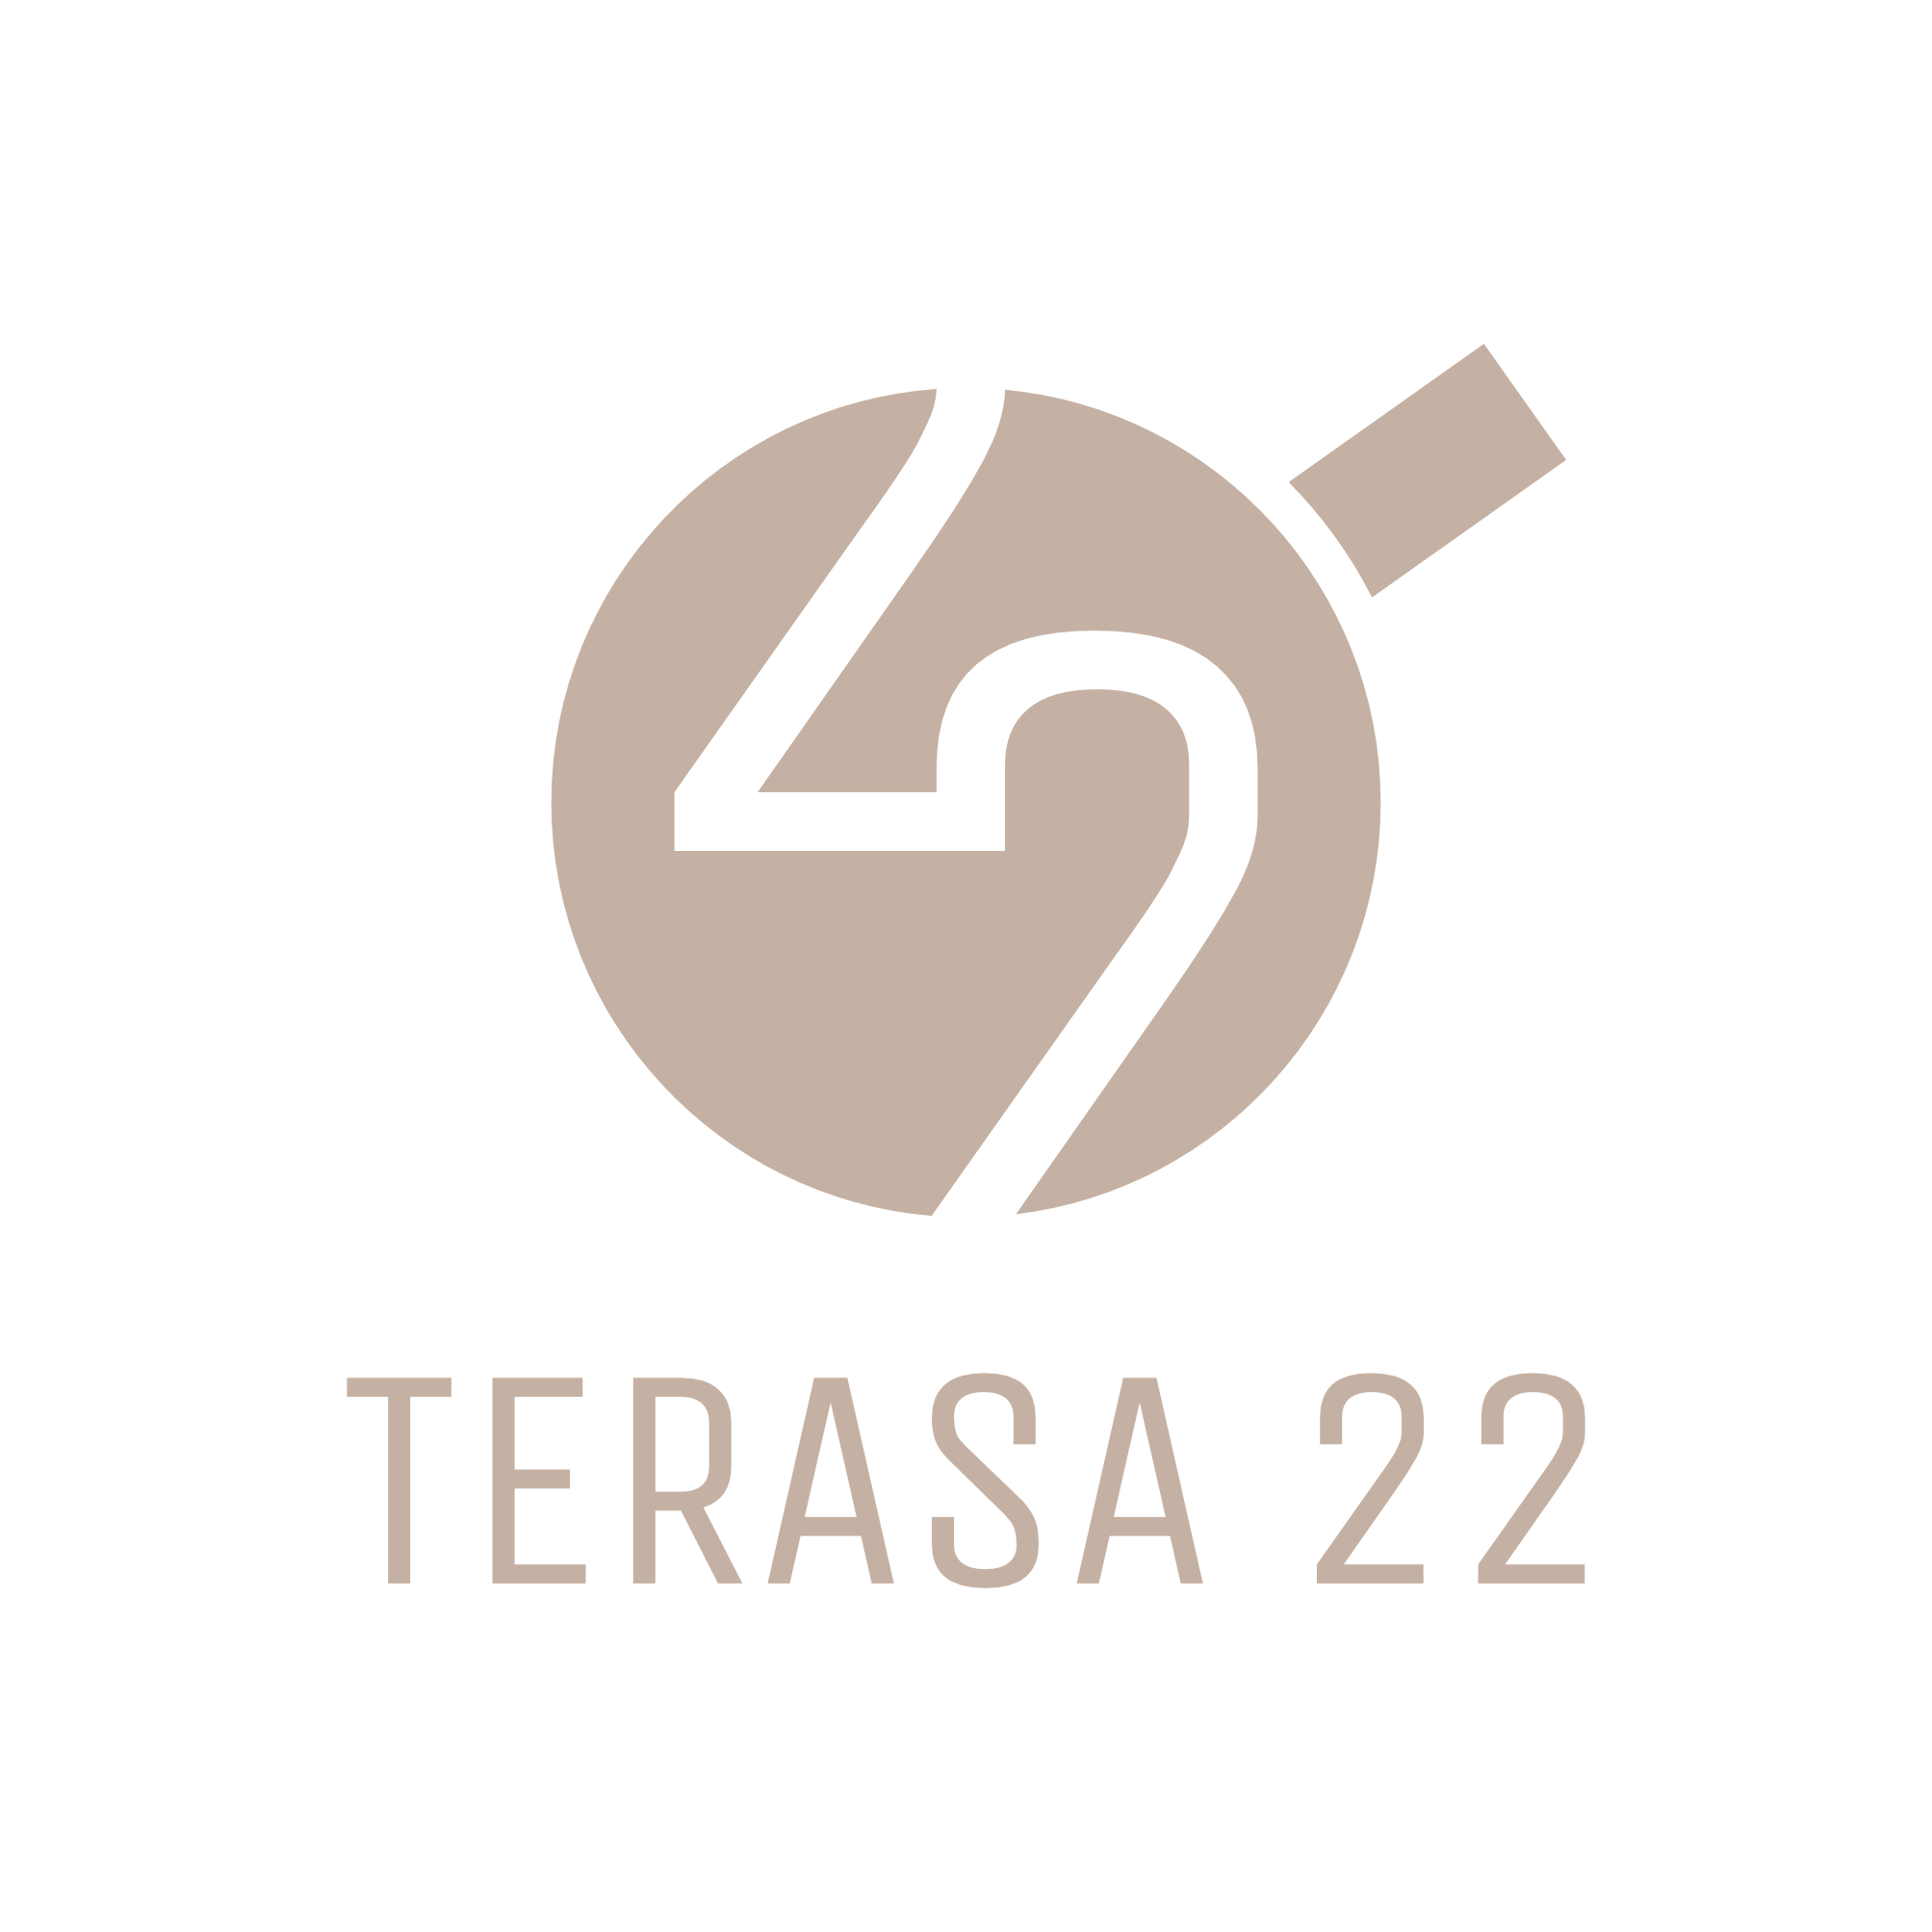 Logotipų kūrimas, logotipo dizainas verslui, kavinė Terasa 22